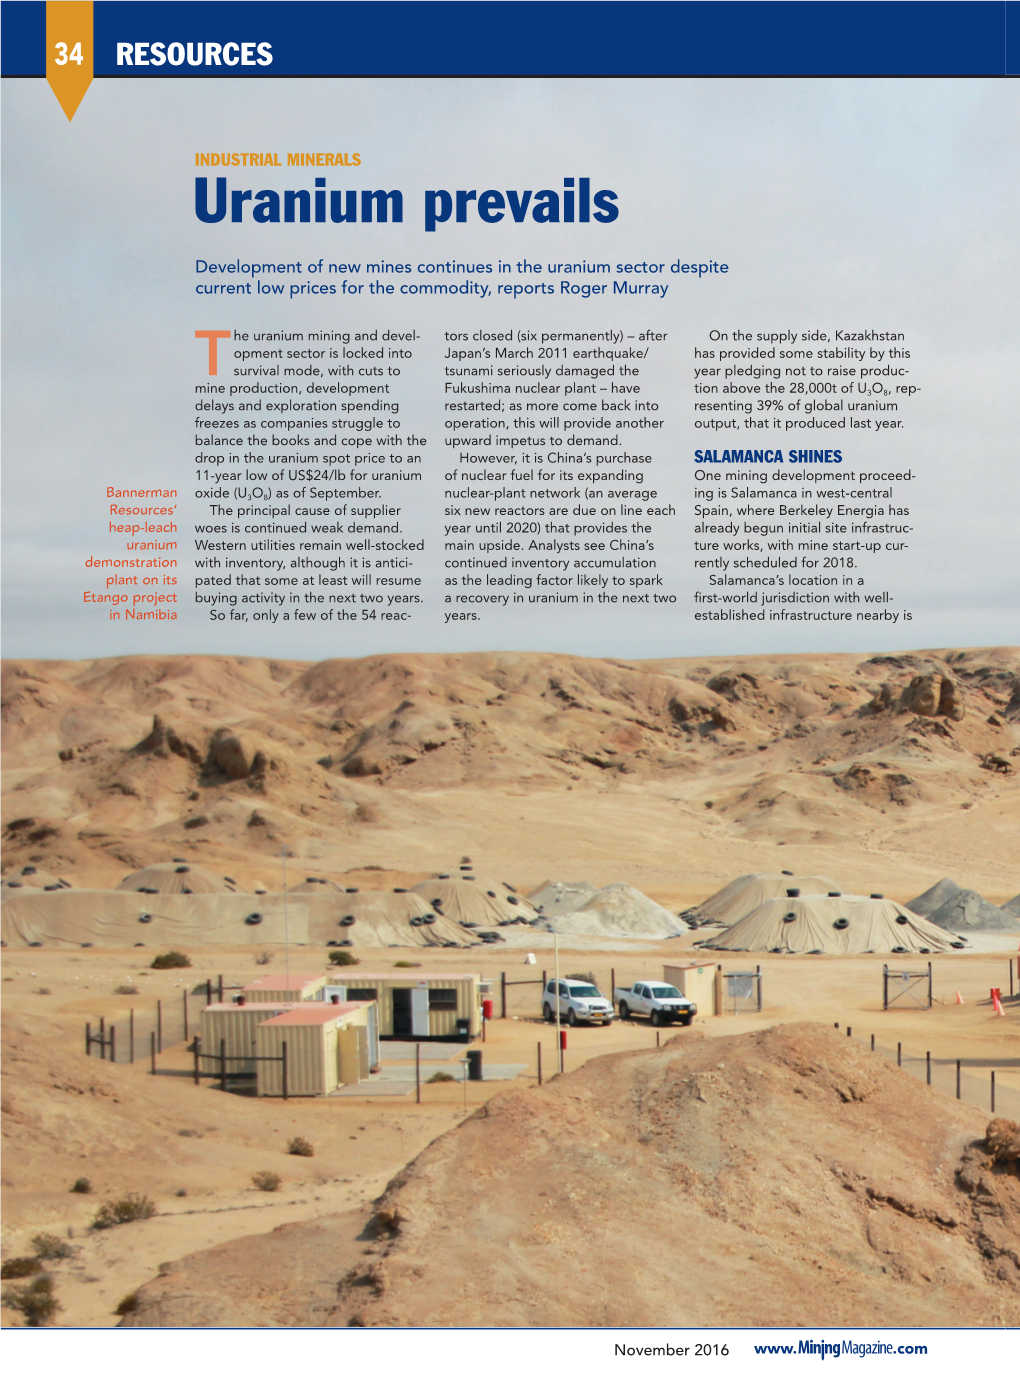 Uranium Prevails